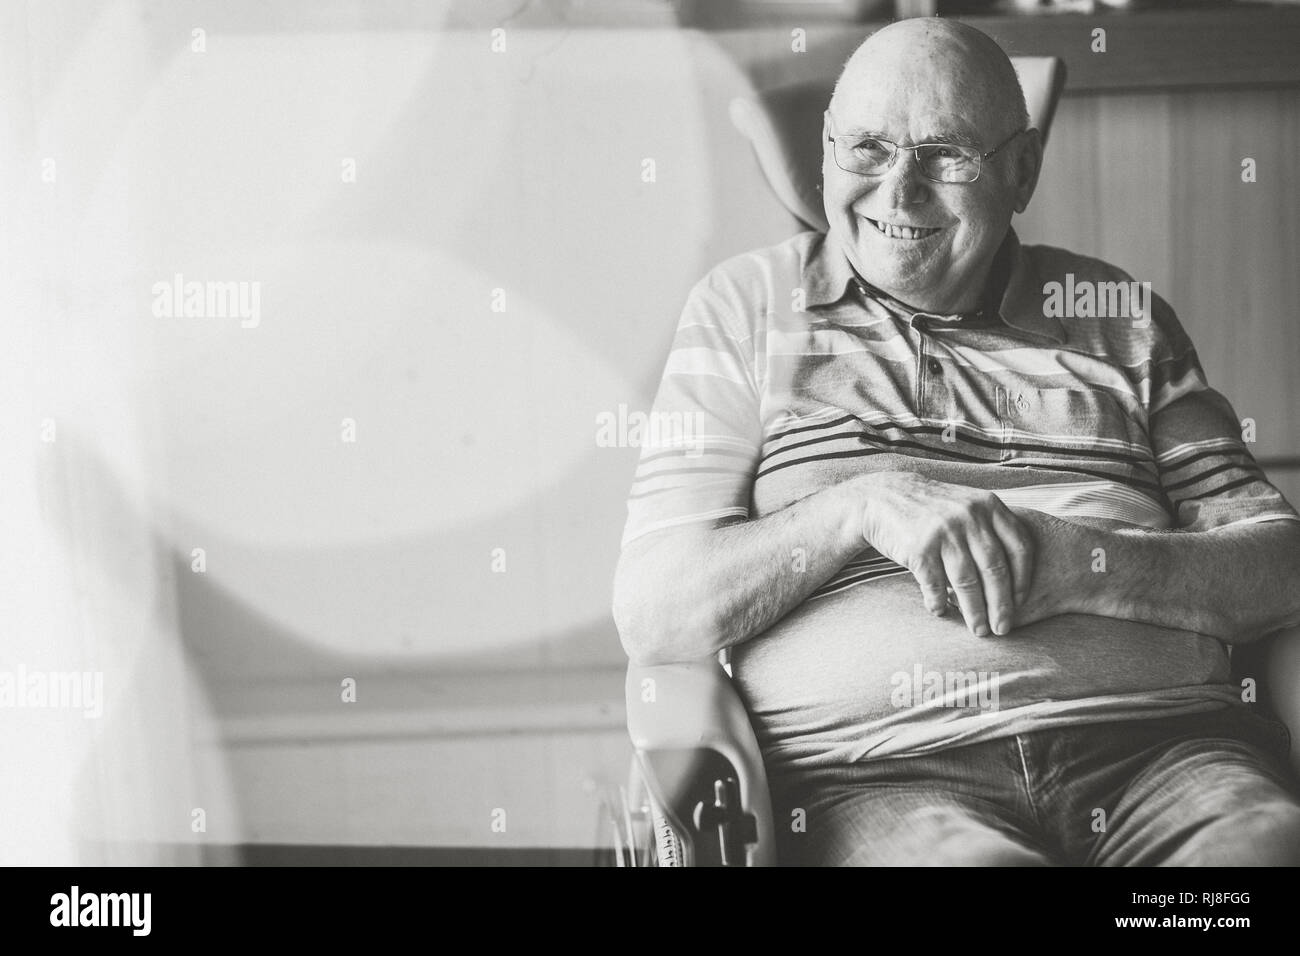 Alter Mann im Rollstuhl, lächeln, s/w Banque D'Images